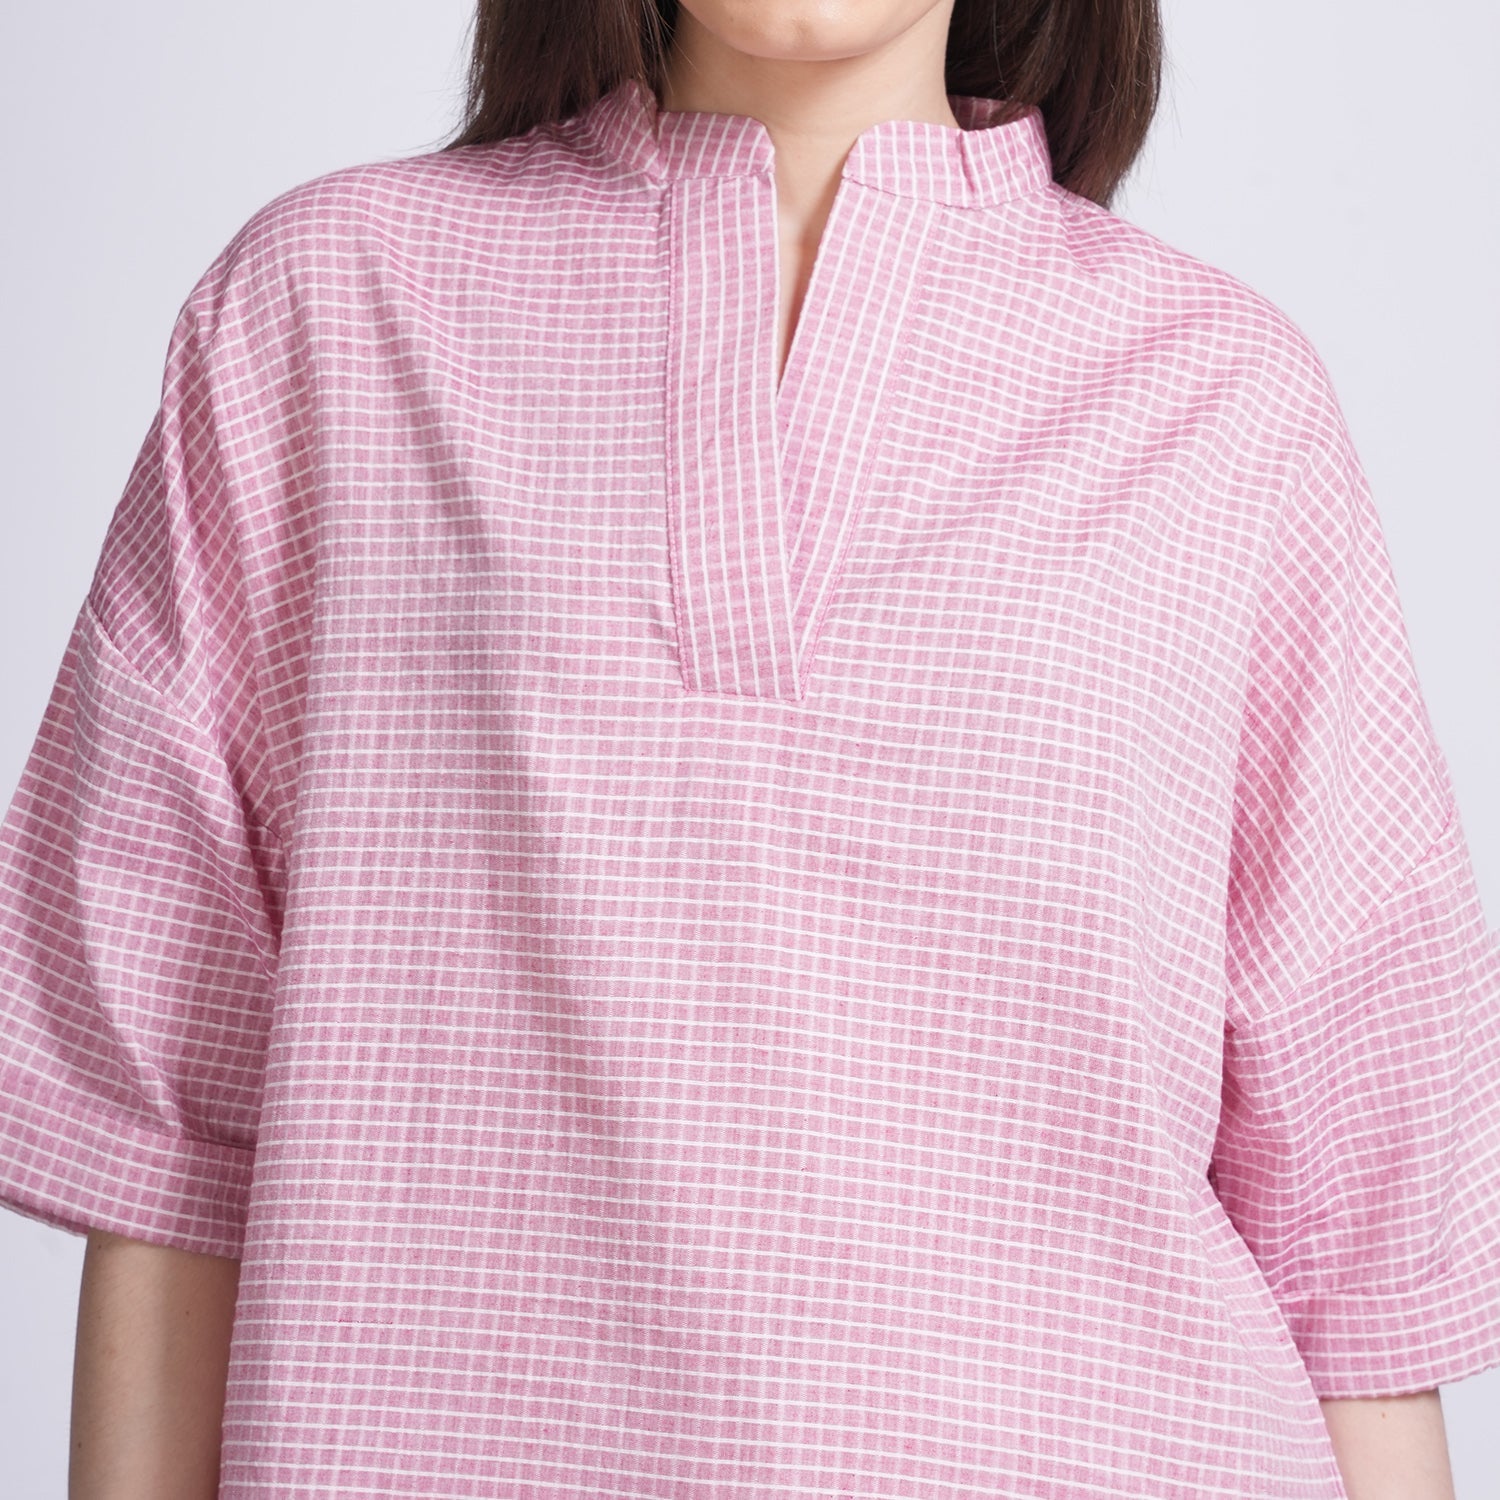 Kimono Top - Pastel Pink Check